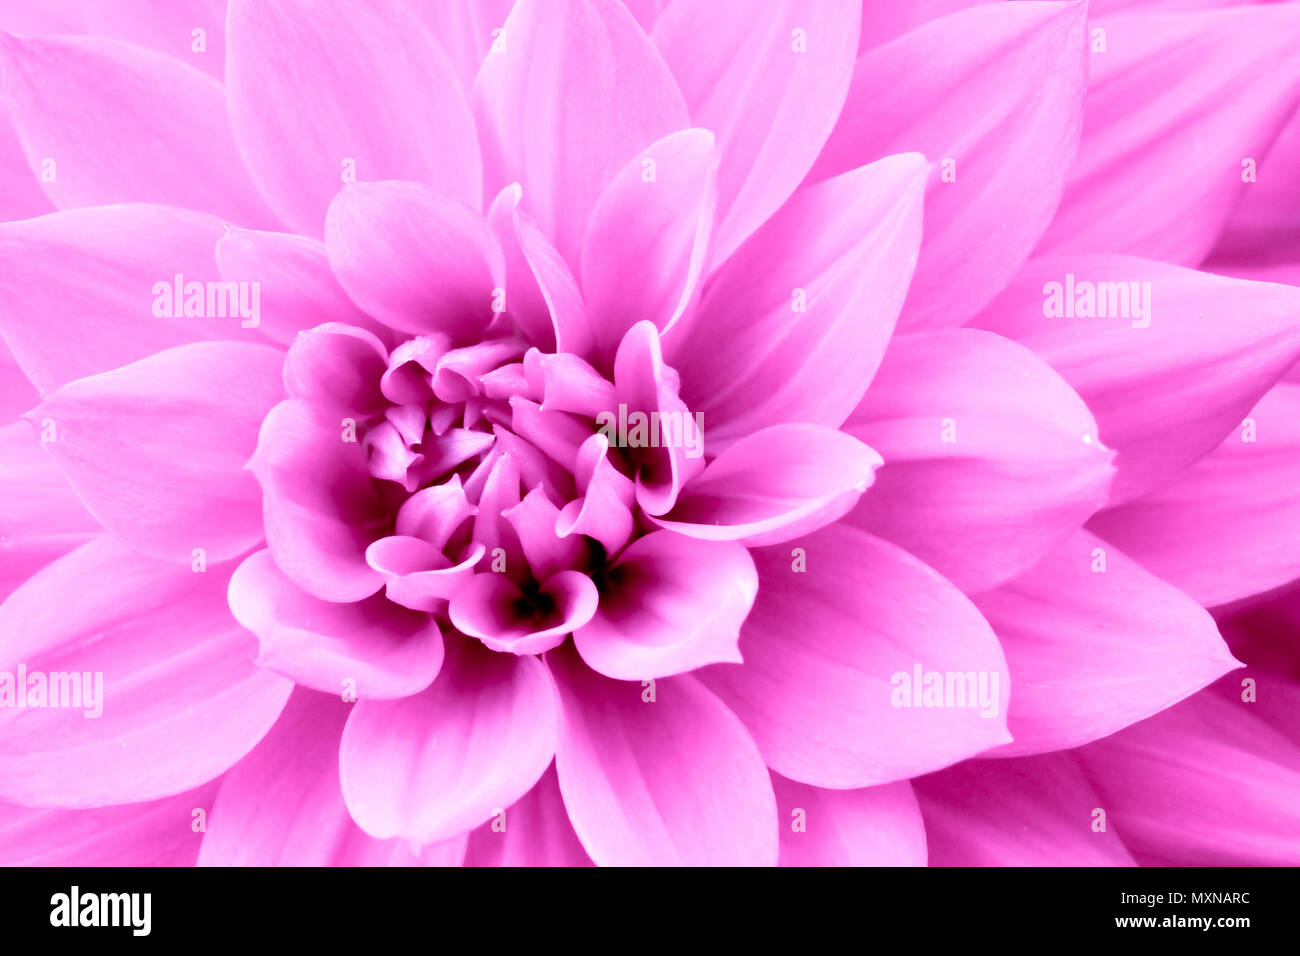 Rosa Lila Dahlie Blume Makro Foto. Farbe Bild unterstreicht rosa Farbtönen und rötliche Schatten in komplizierten geometrischen Muster. Konzept Hintergrund fo Stockfoto